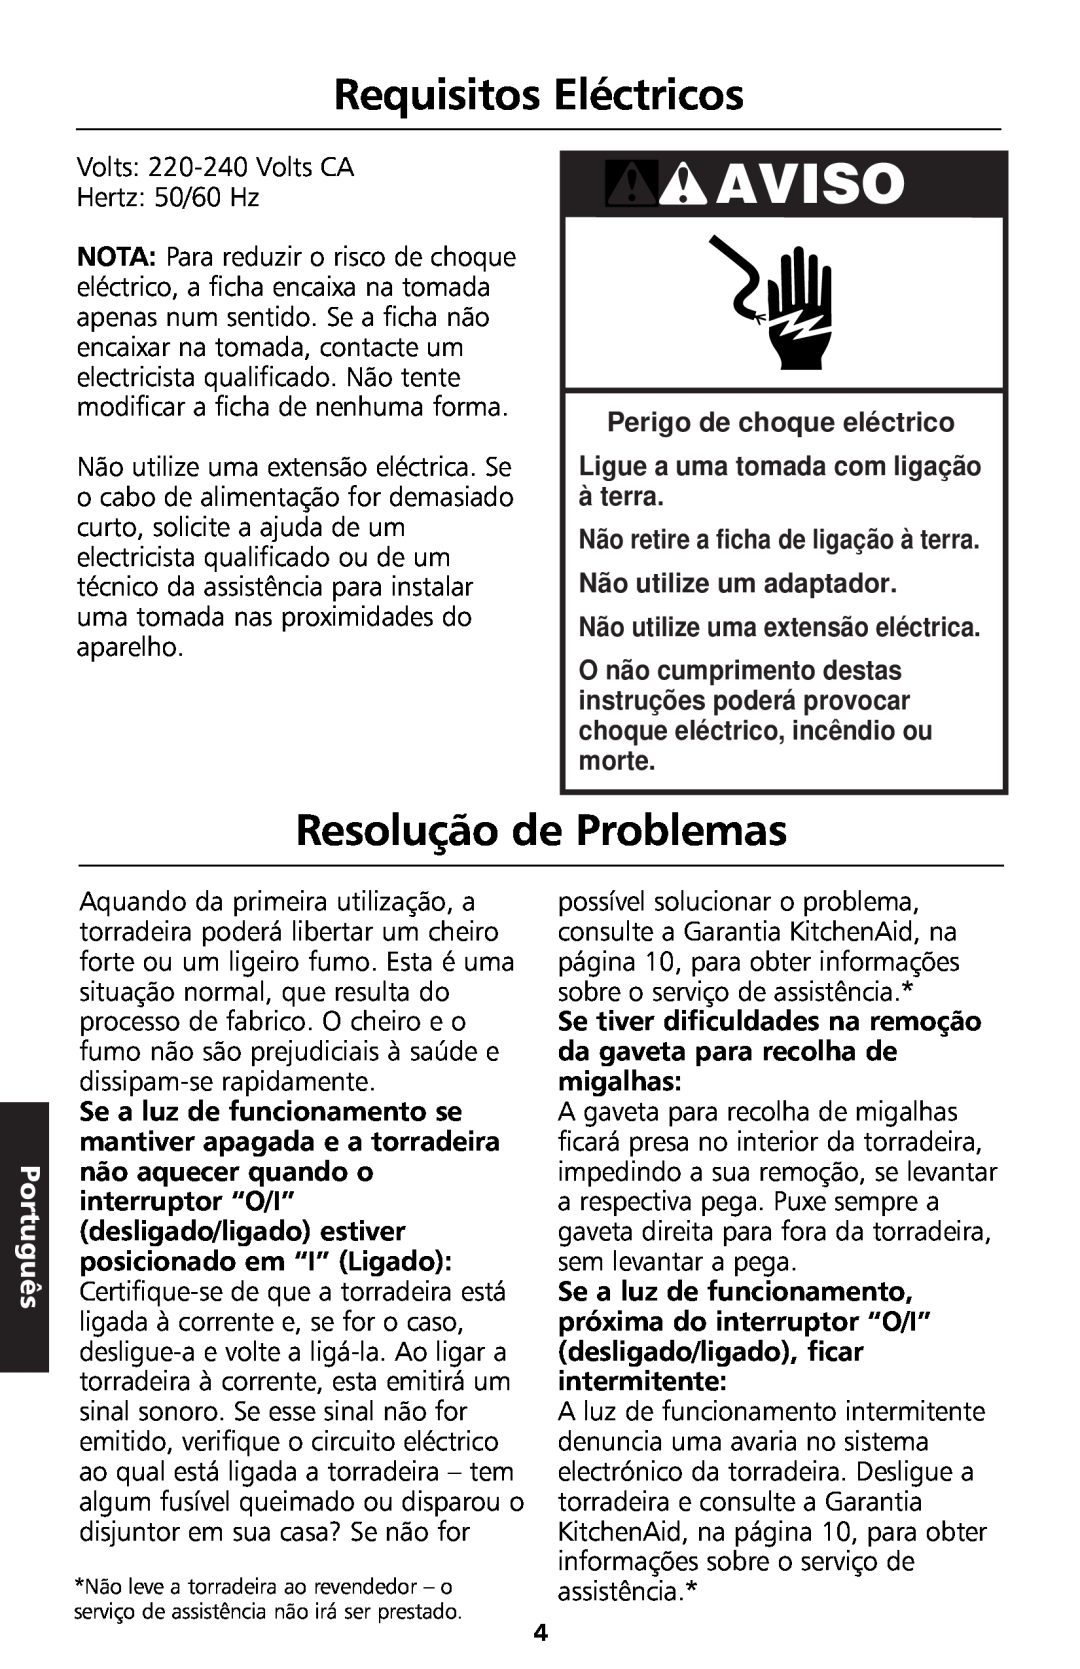 KitchenAid 5KTT890 manual Aviso, Requisitos Eléctricos, Resolução de Problemas, Perigo de choque eléctrico, Português 